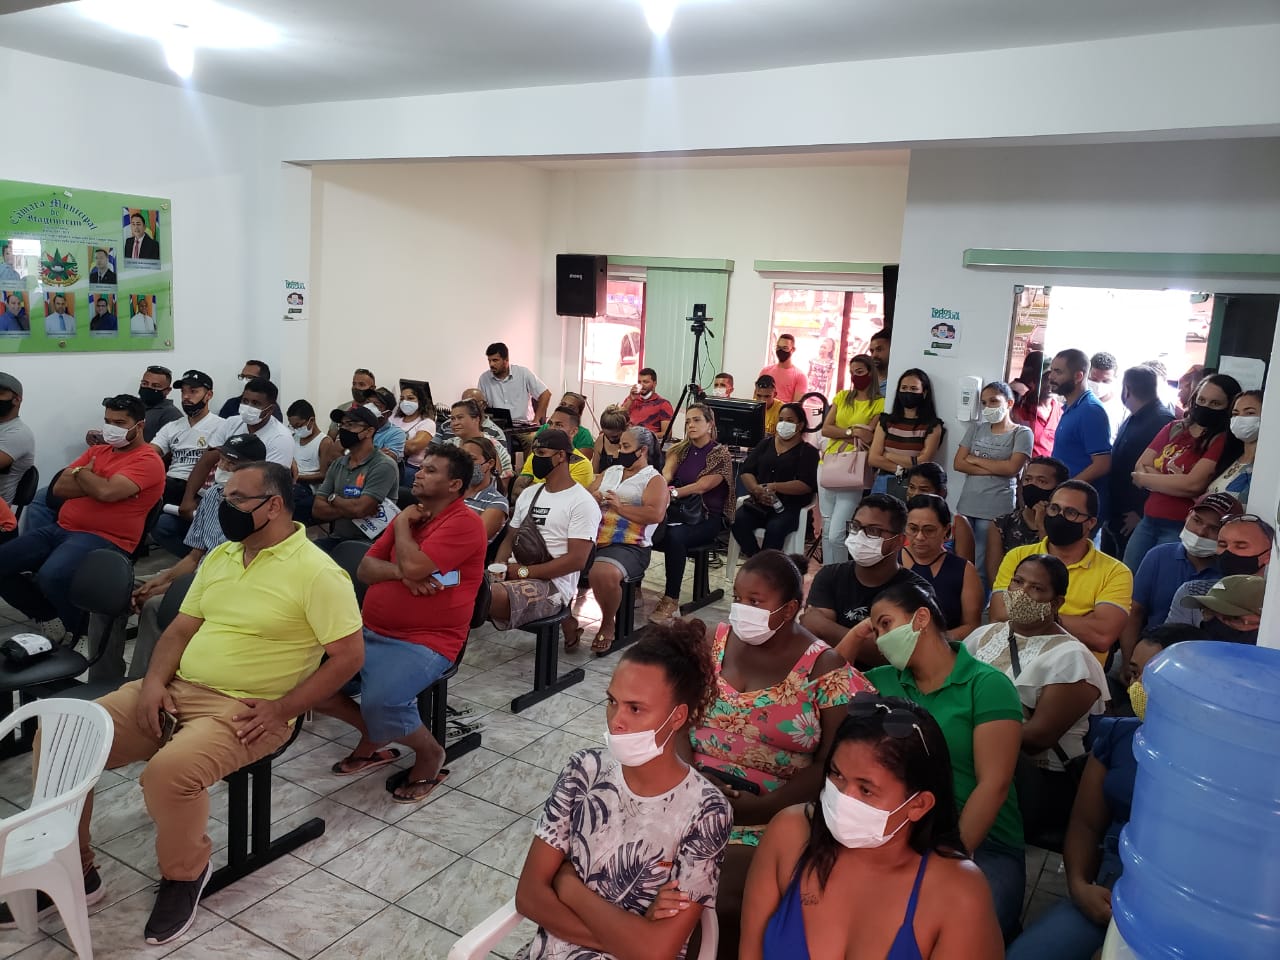 Presidente da Câmara de Vereadores de Itagimirim adia aprovação de projeto e ato pode provocar paralisação de serviços fundamentais no município 36